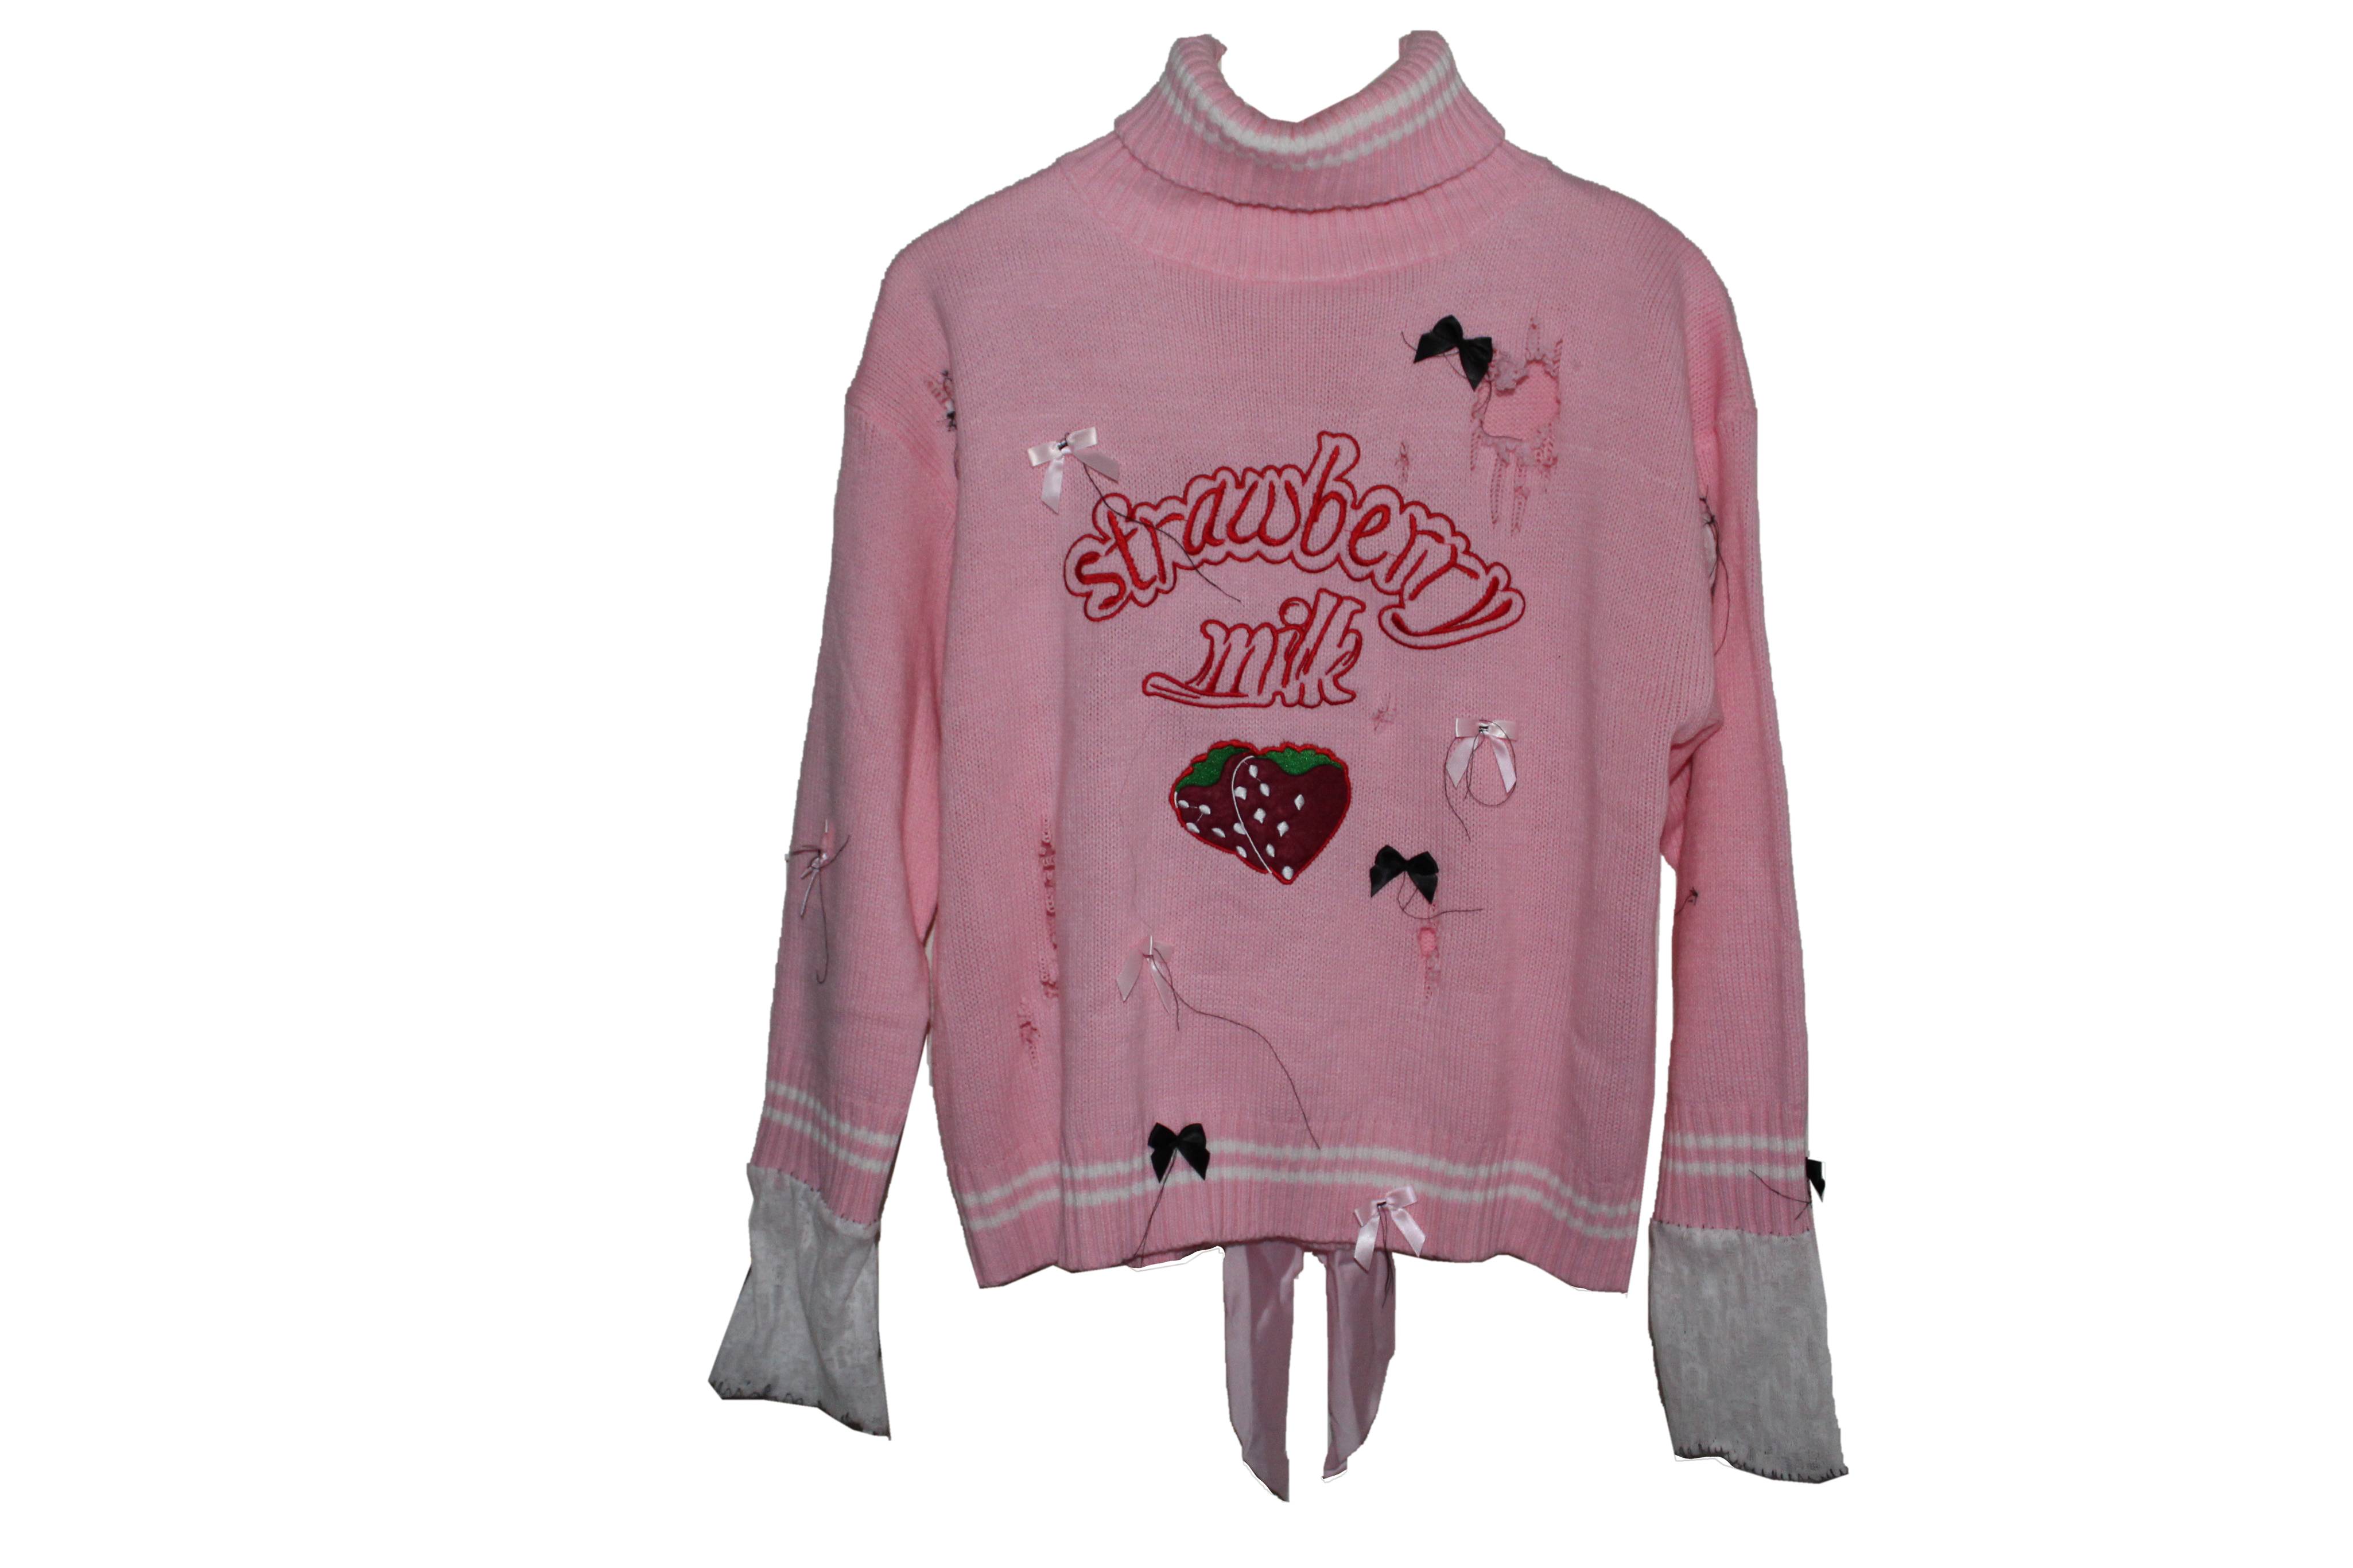 strawberrymilksweater1_899b85db-8a52-4d52-9a1c-094863175755.png